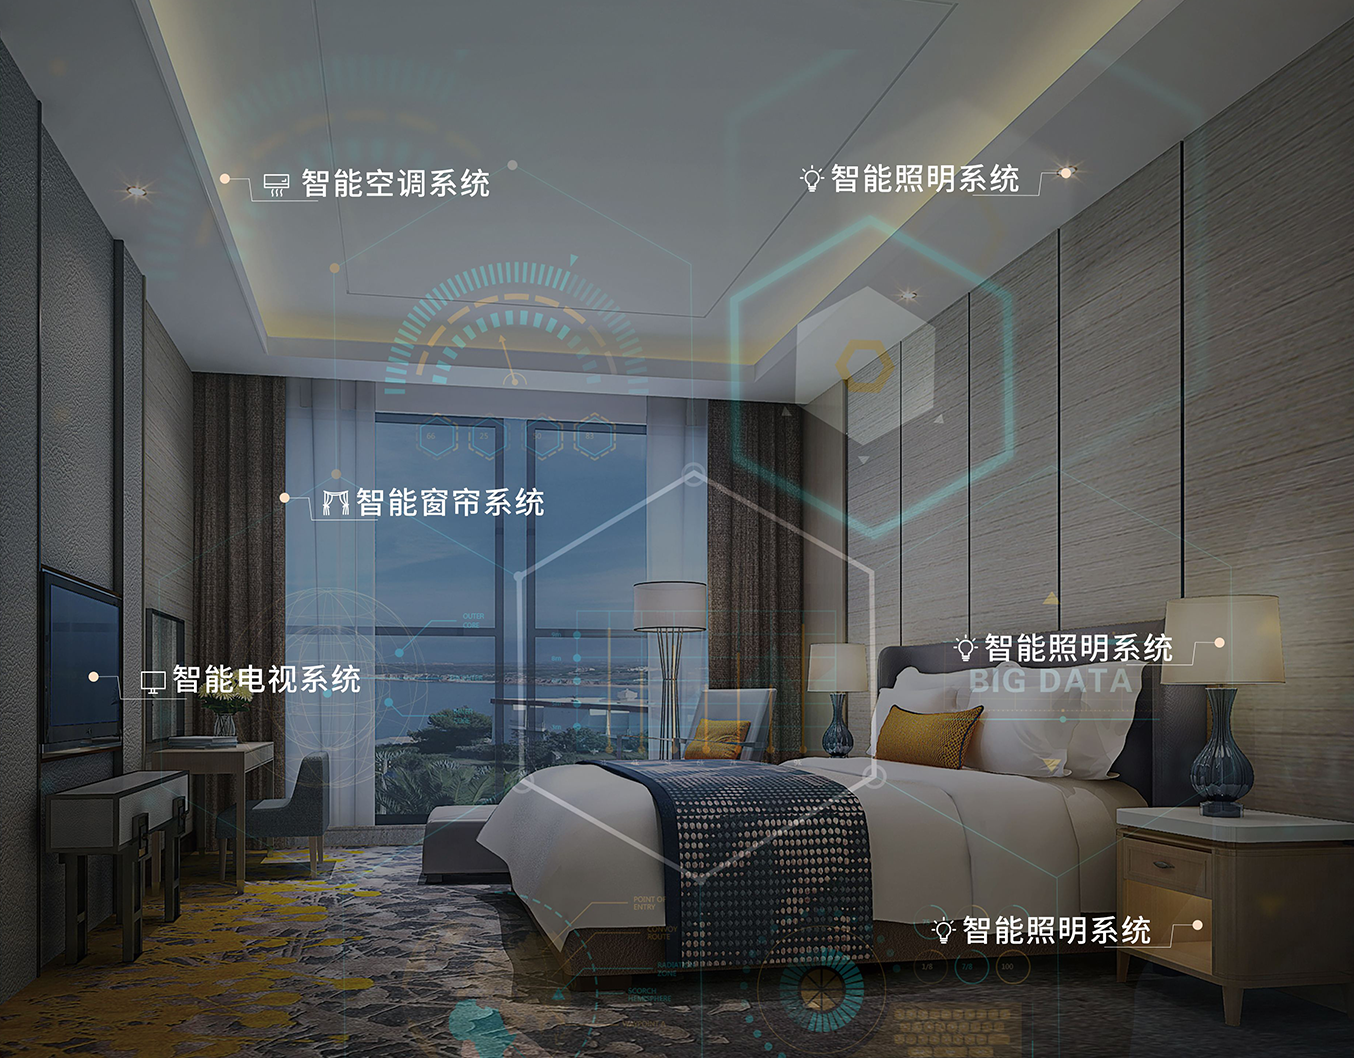 智慧酒店带来新体验 如何实现数字化转型